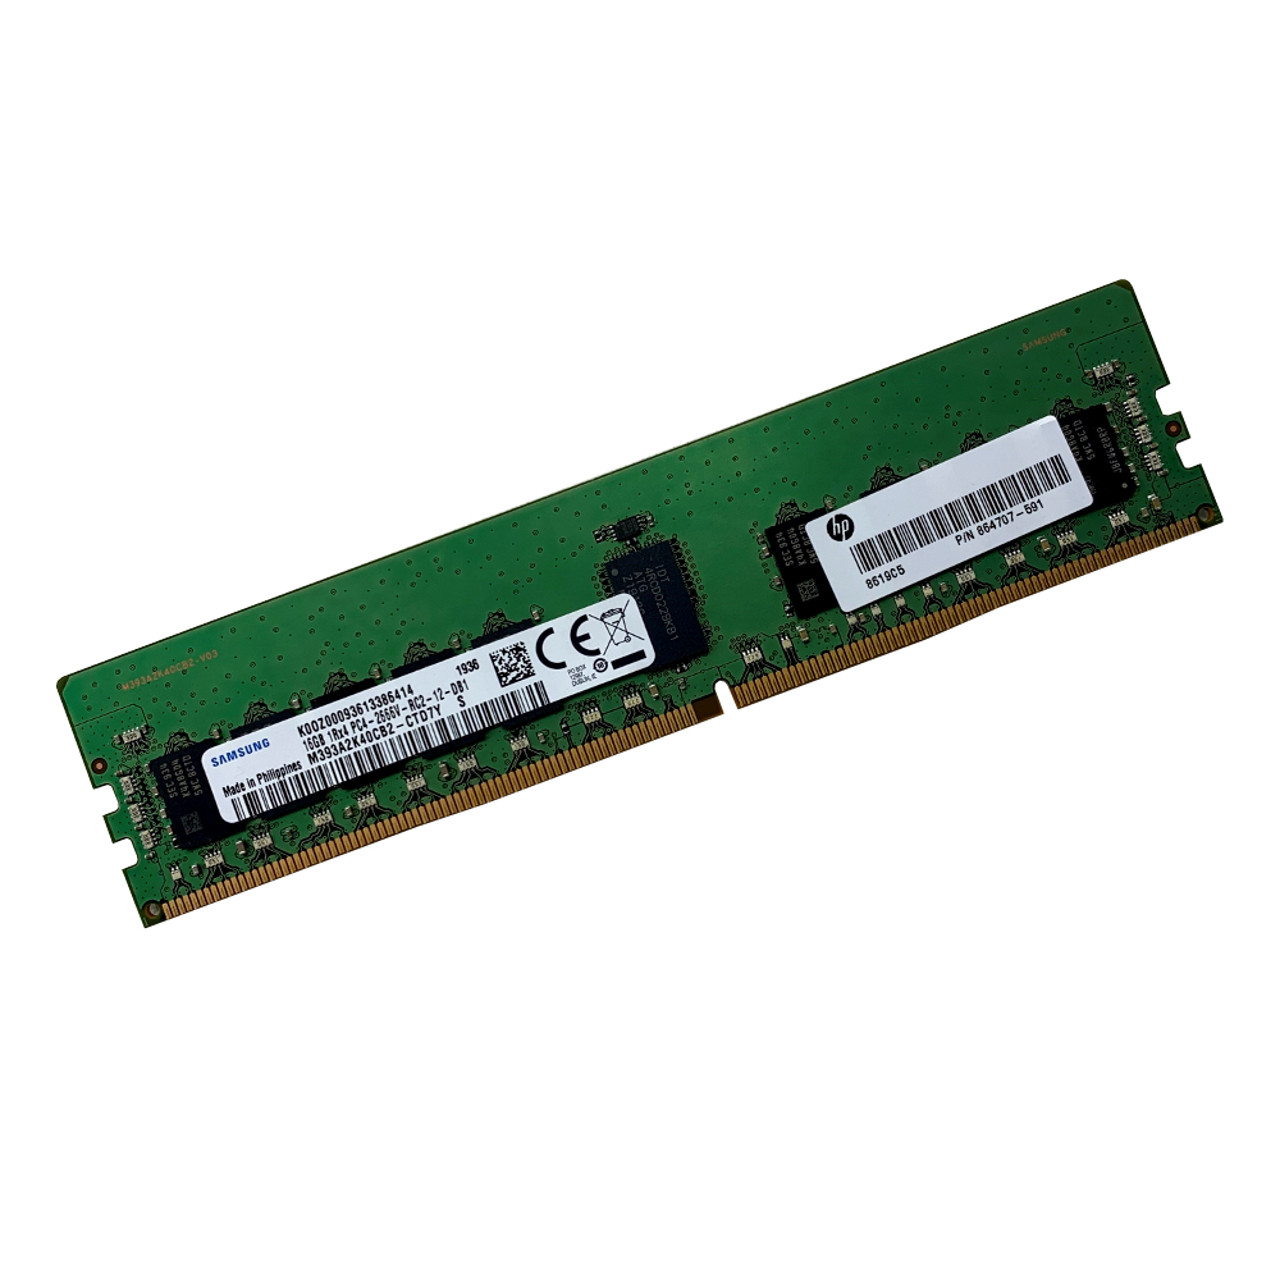 Samsung - 16GB 1Rx4 PC4-2666V-R - ECC Registered DDR4 Memory - Used -  (M393A2K40CB2-CTD7Y)